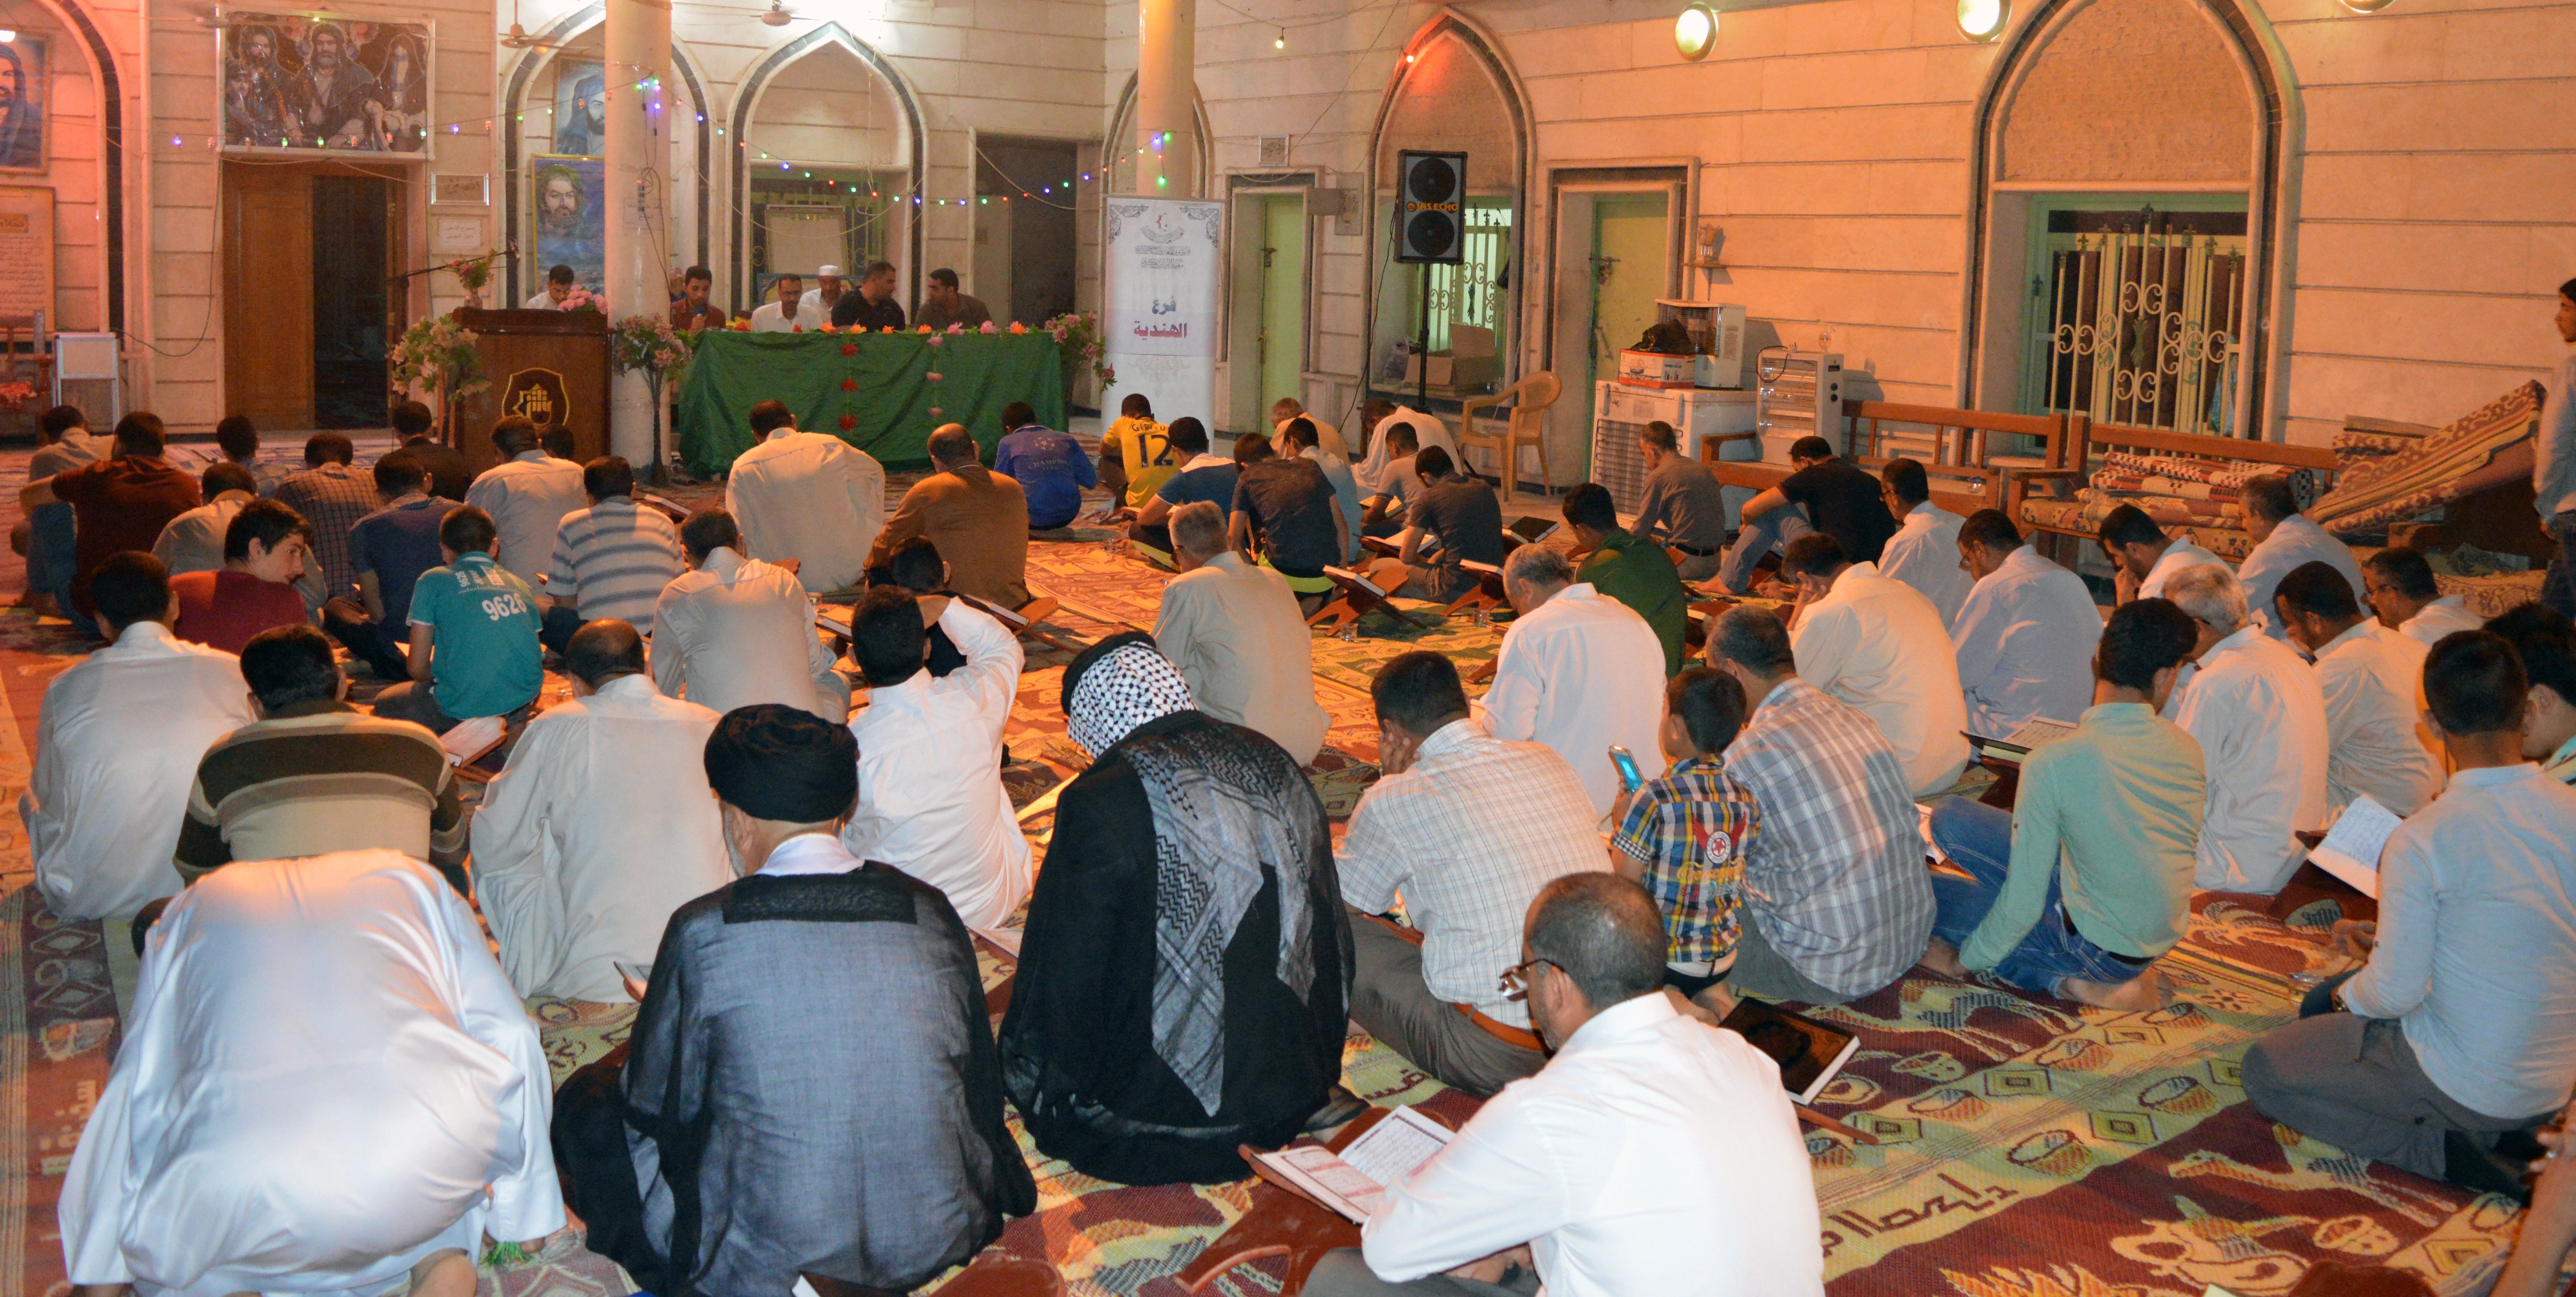 معهد القرآن الكريم فرع الهندية يقيم ختمة قرآنية مباركة